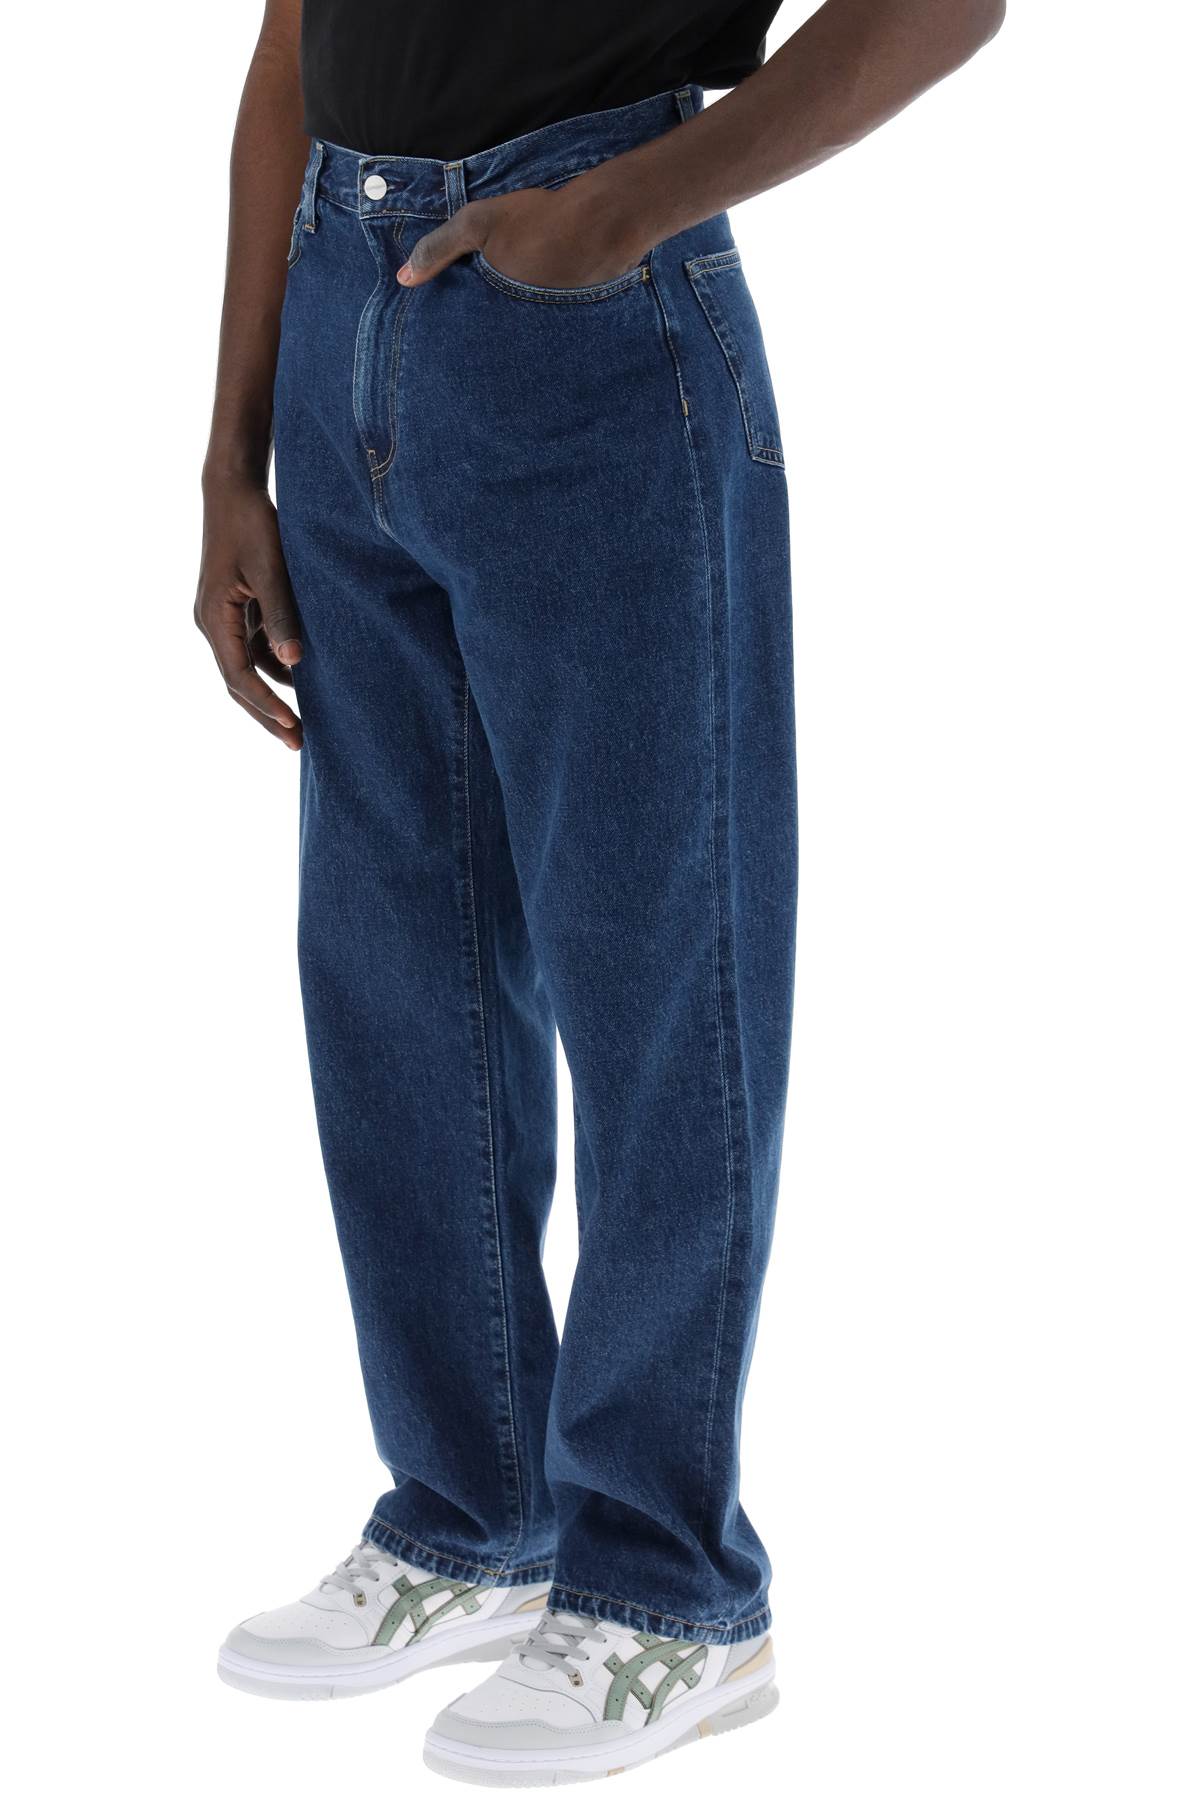 Shop Carhartt Landon Loose Fit Jeans